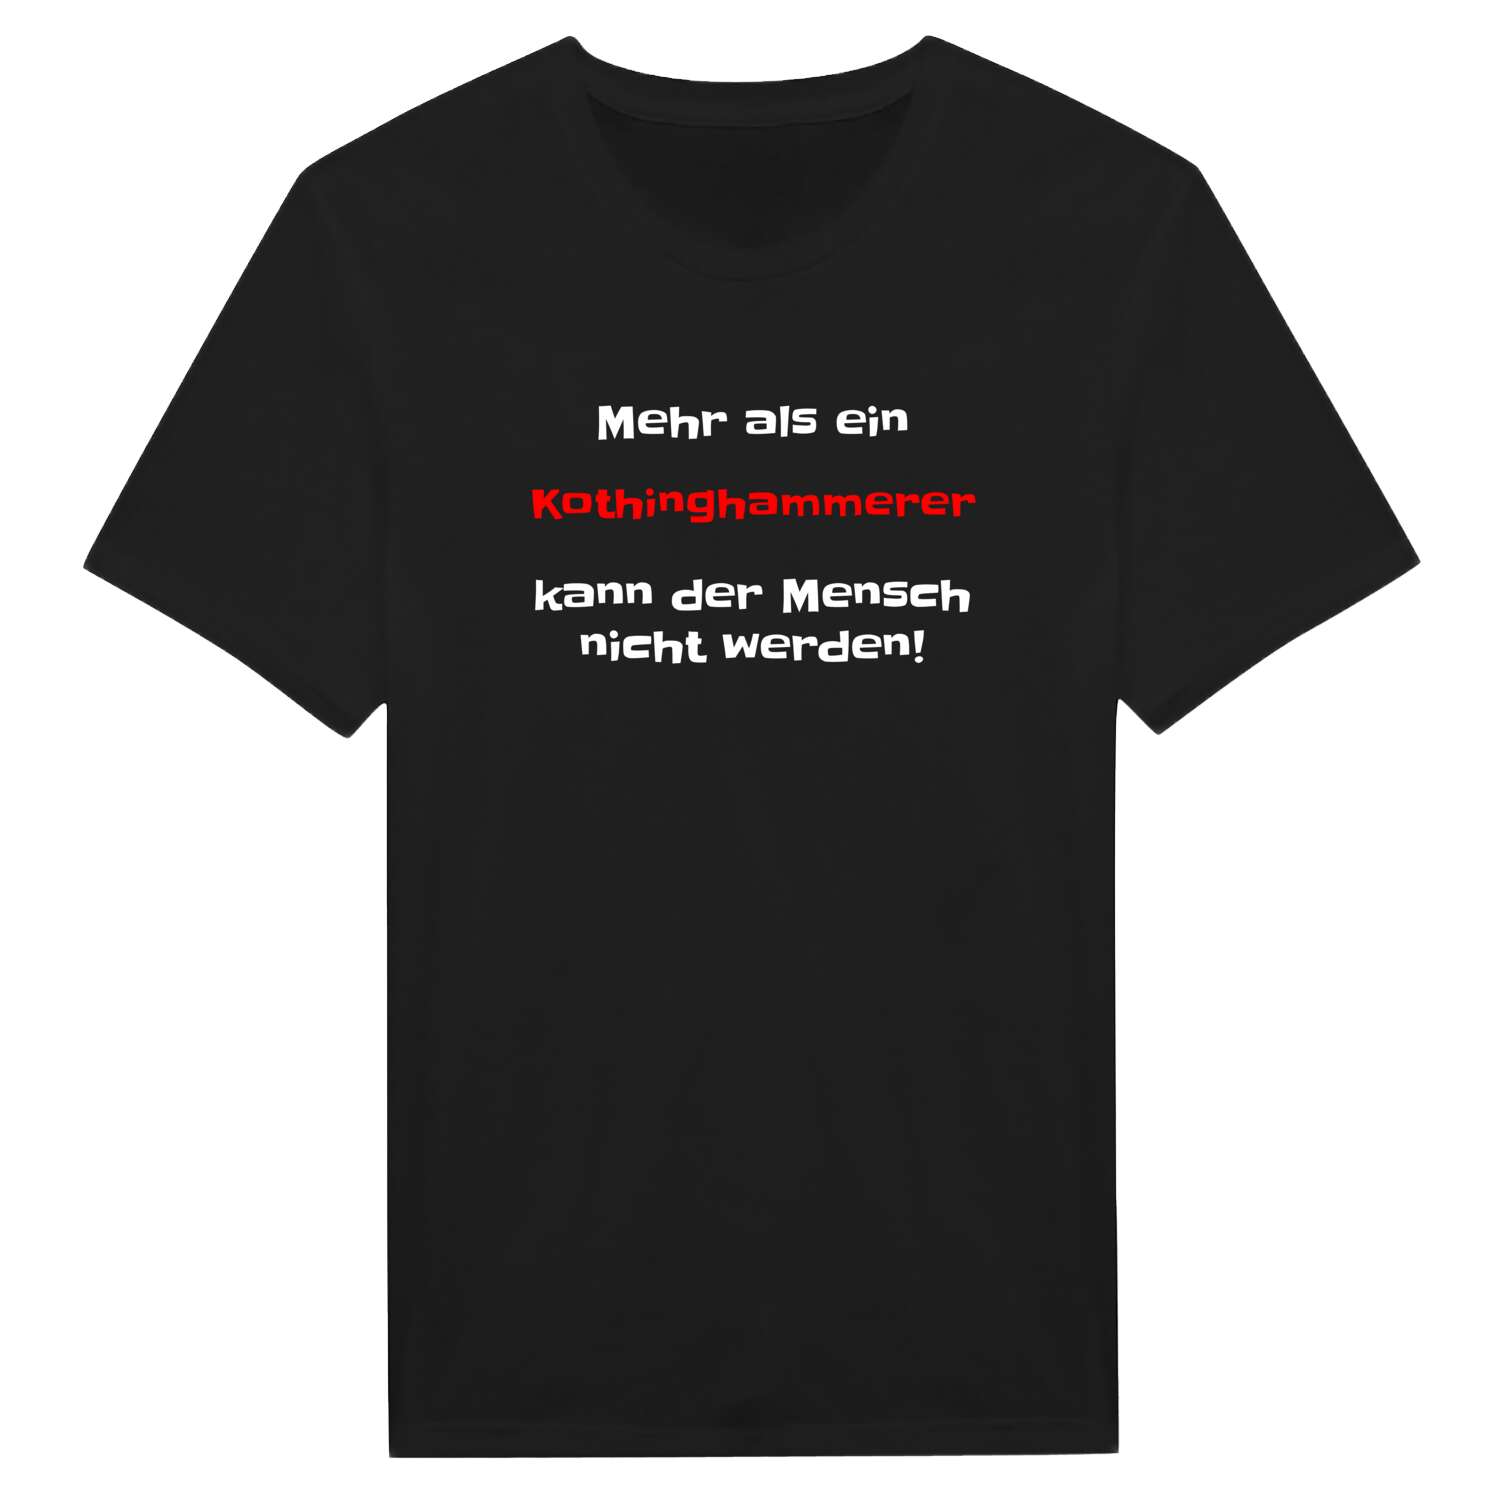 Kothinghammer T-Shirt »Mehr als ein«